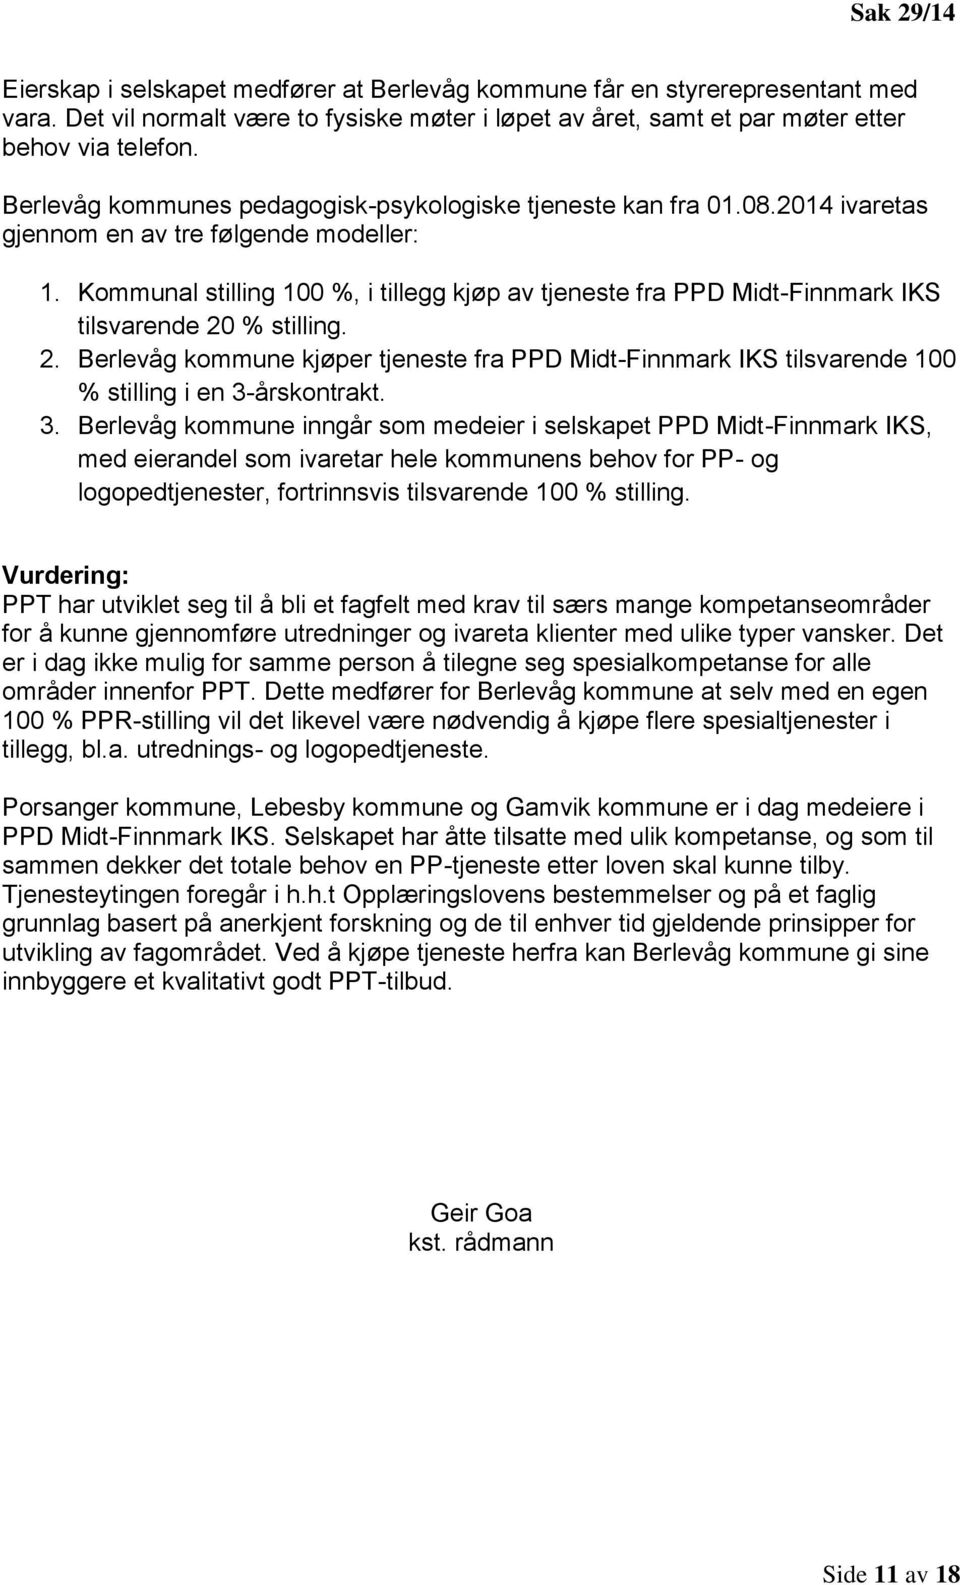 Kommunal stilling 100 %, i tillegg kjøp av tjeneste fra PPD Midt-Finnmark IKS tilsvarende 20 % stilling. 2. Berlevåg kommune kjøper tjeneste fra PPD Midt-Finnmark IKS tilsvarende 100 % stilling i en 3-årskontrakt.